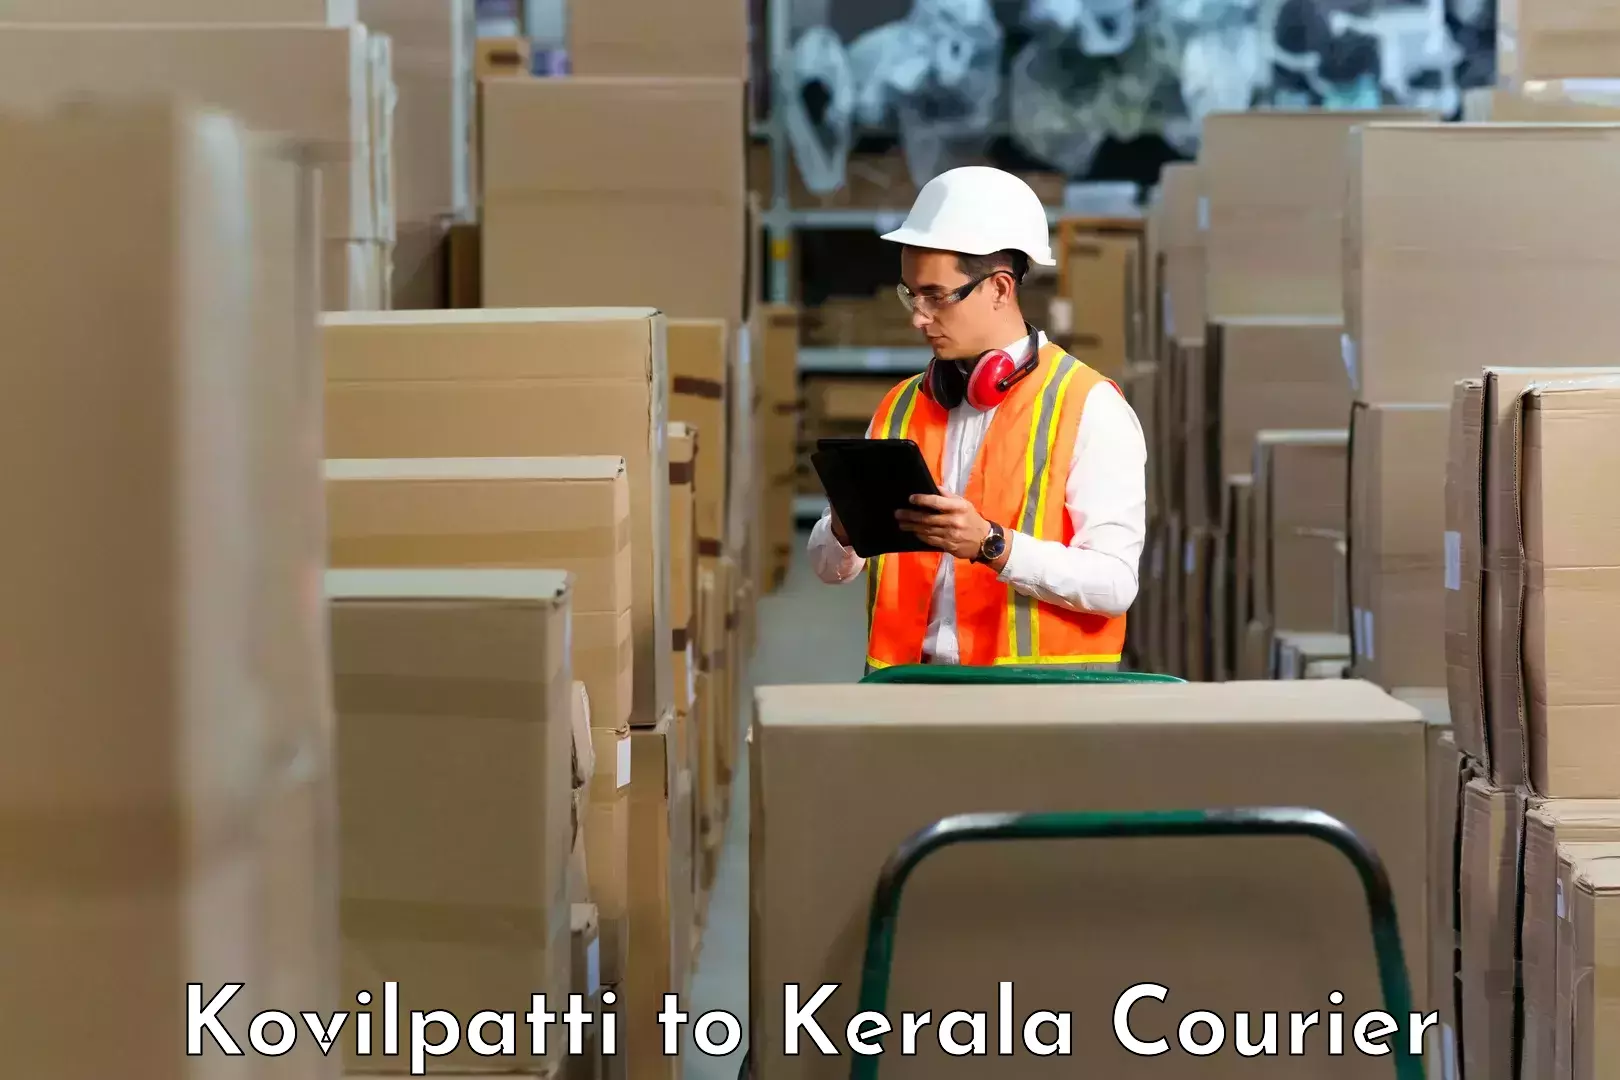 Smart logistics strategies in Kovilpatti to Kottayam